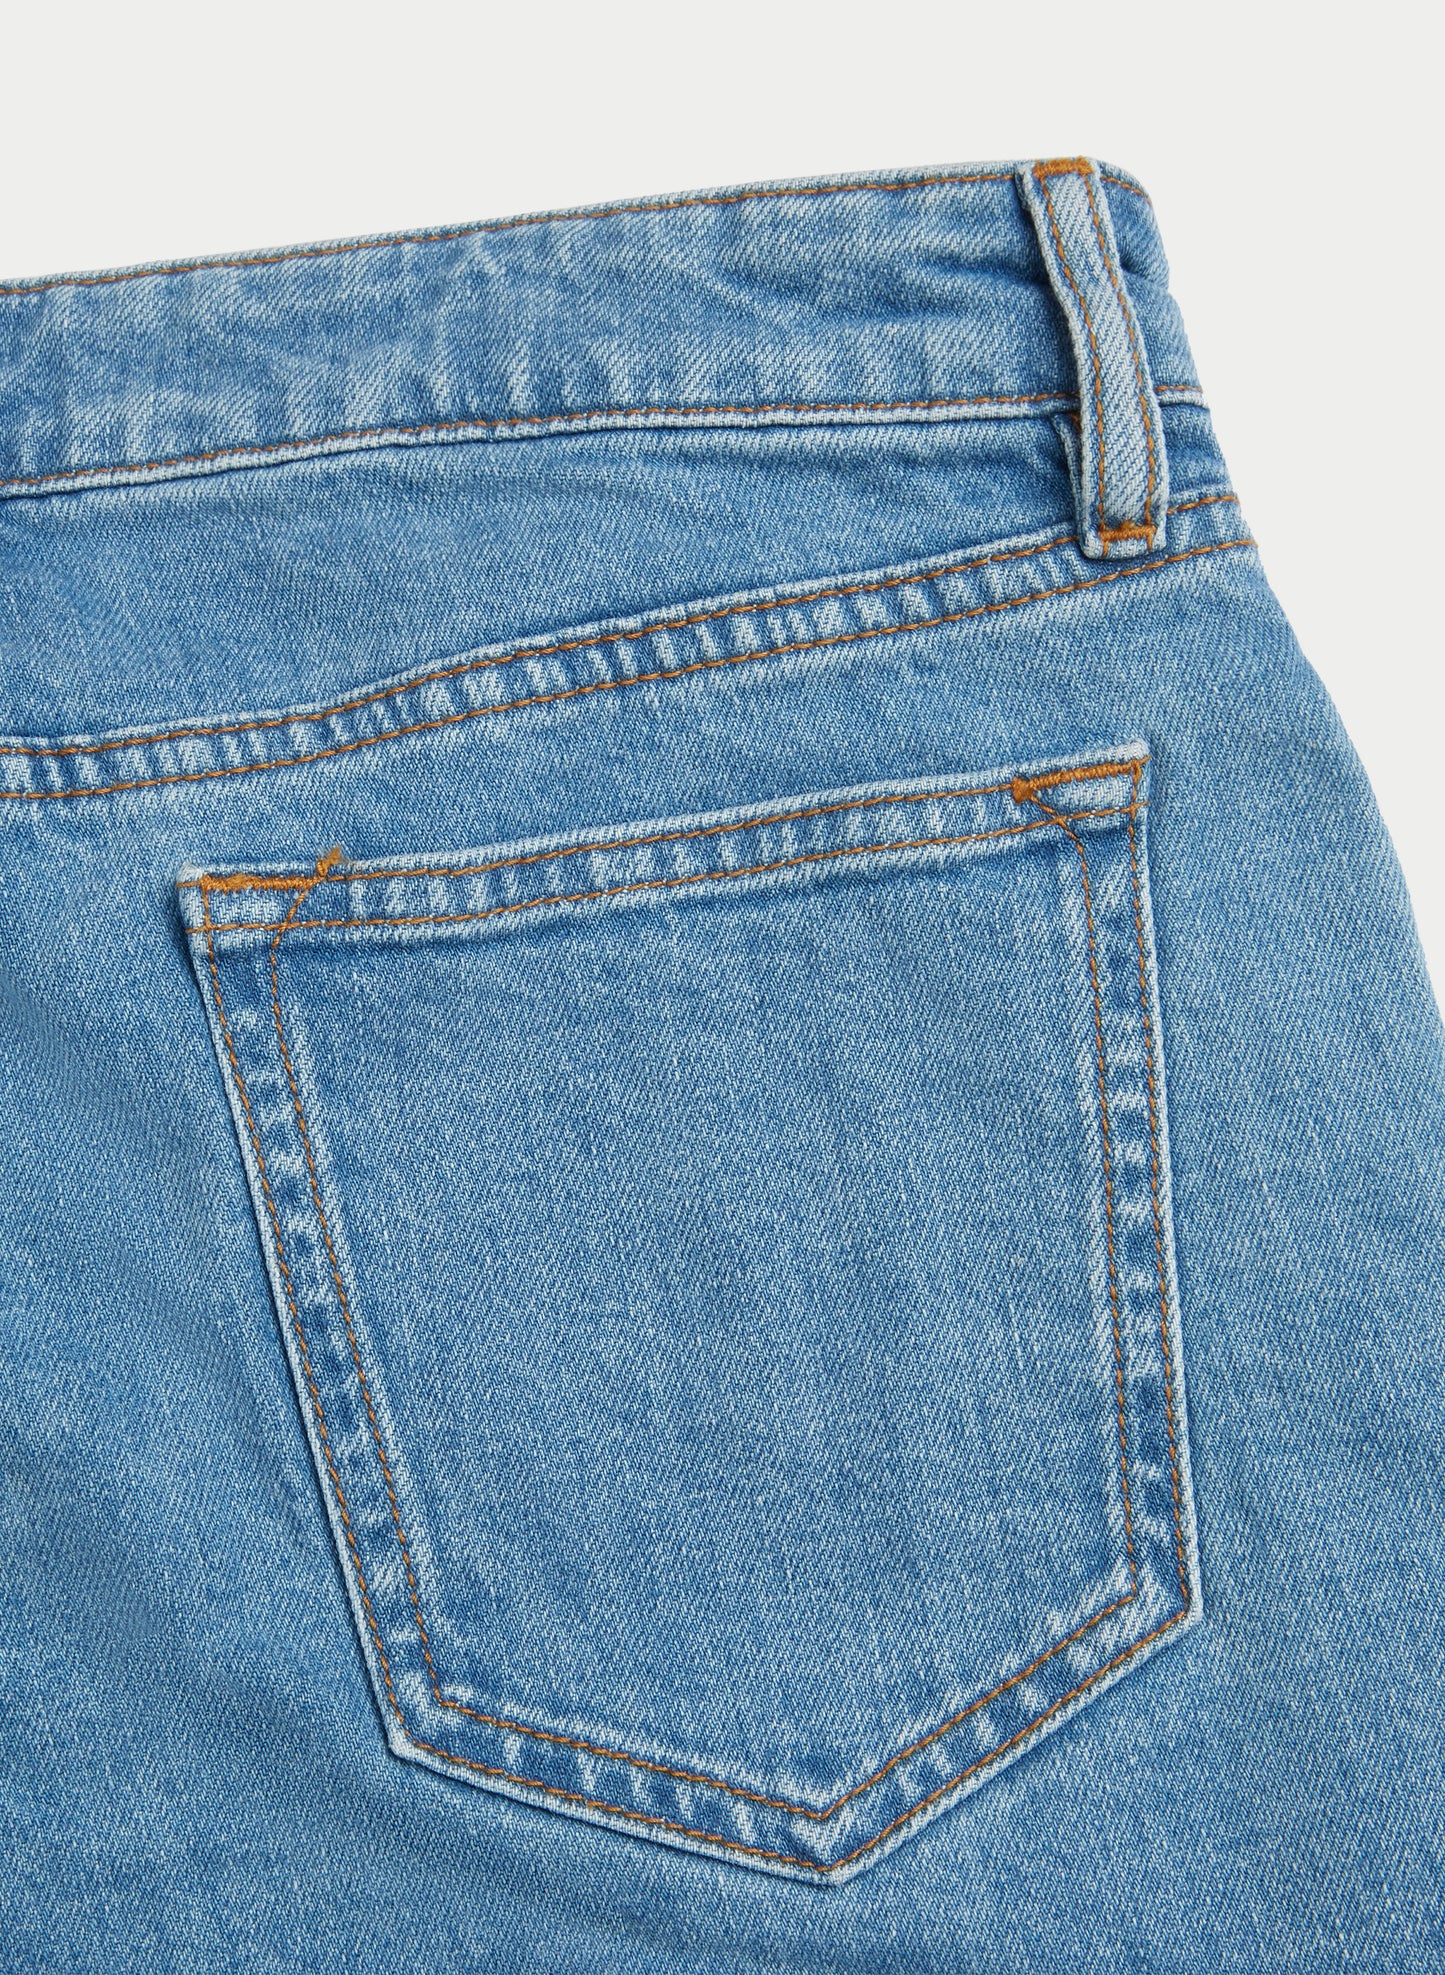 Five Pocket Denim Jeans Light Blue Model Back Pocket Detail